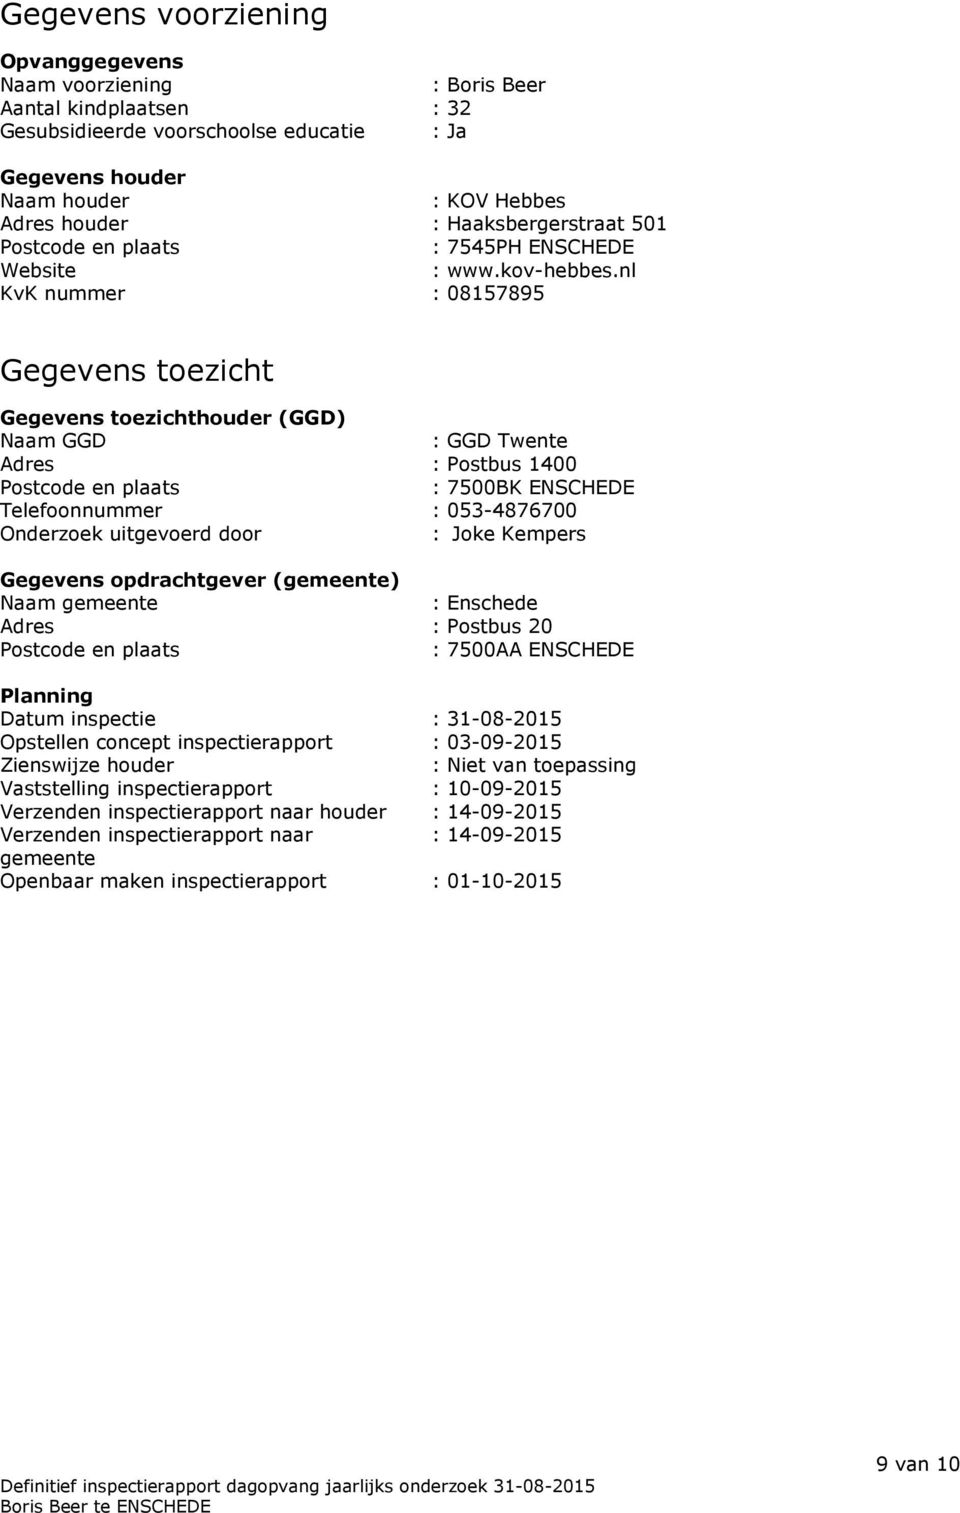 nl KvK nummer : 08157895 Gegevens toezicht Gegevens toezichthouder (GGD) Naam GGD : GGD Twente Adres : Postbus 1400 Postcode en plaats : 7500BK ENSCHEDE Telefoonnummer : 053-4876700 Onderzoek